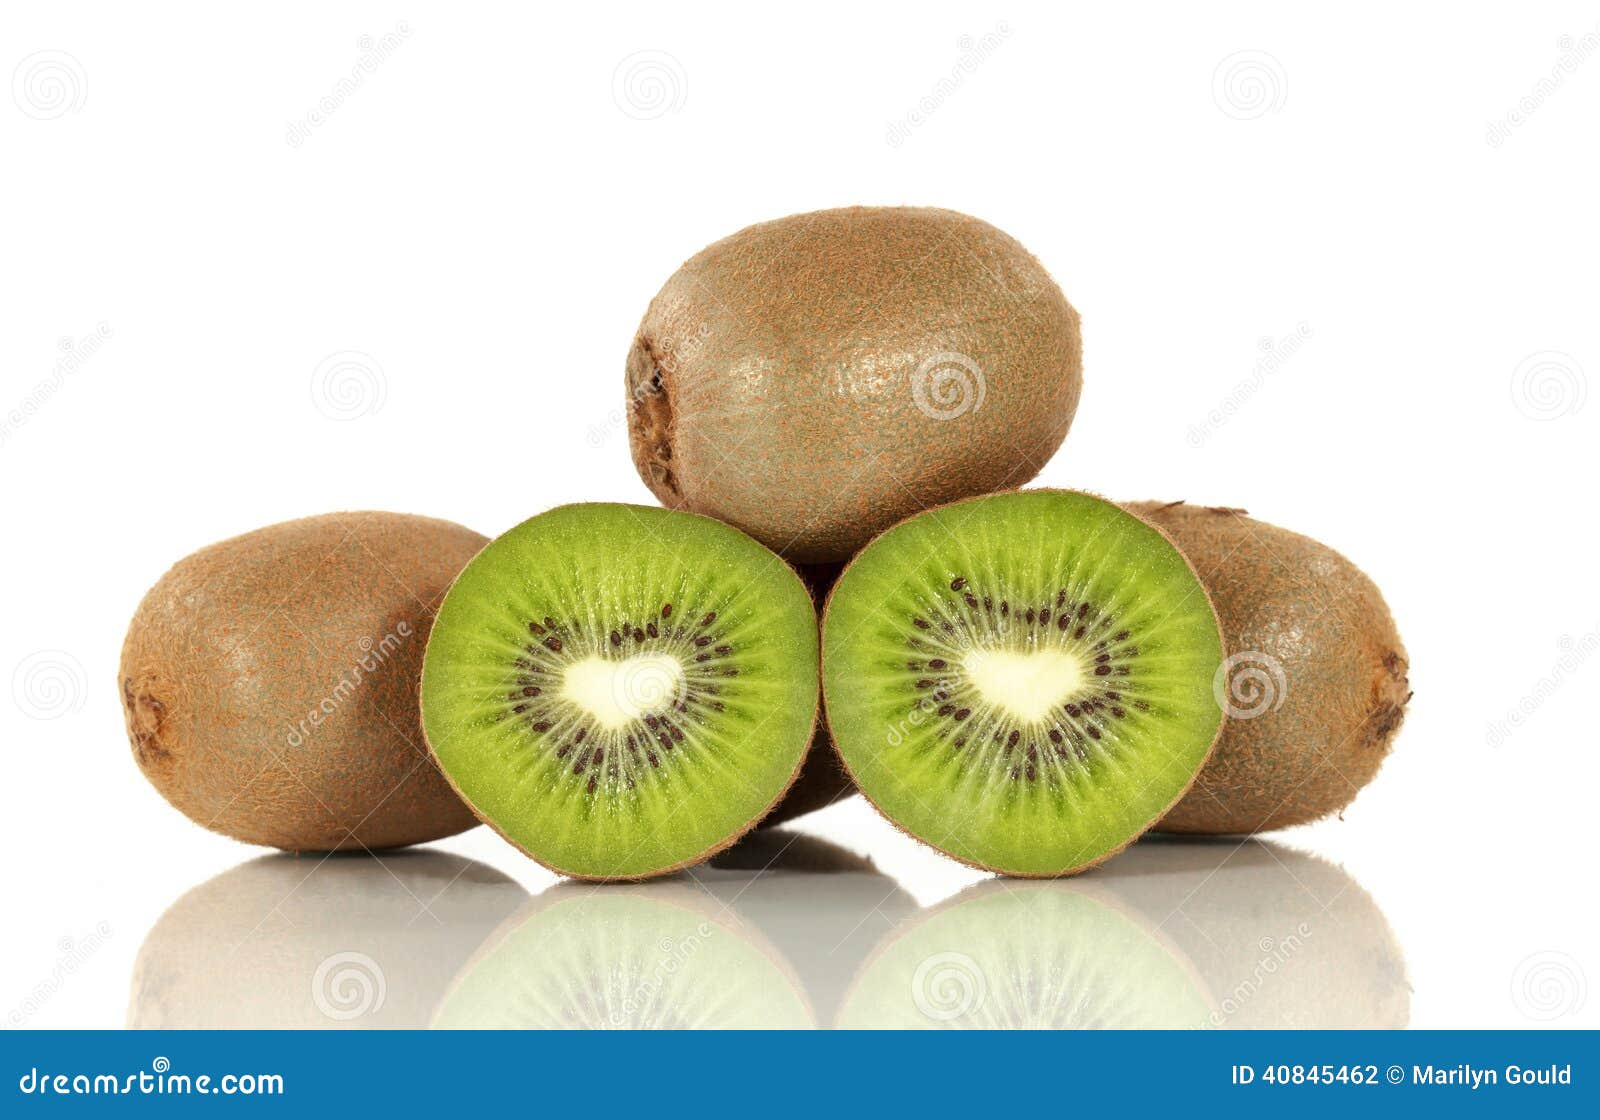 kiwi fruit group